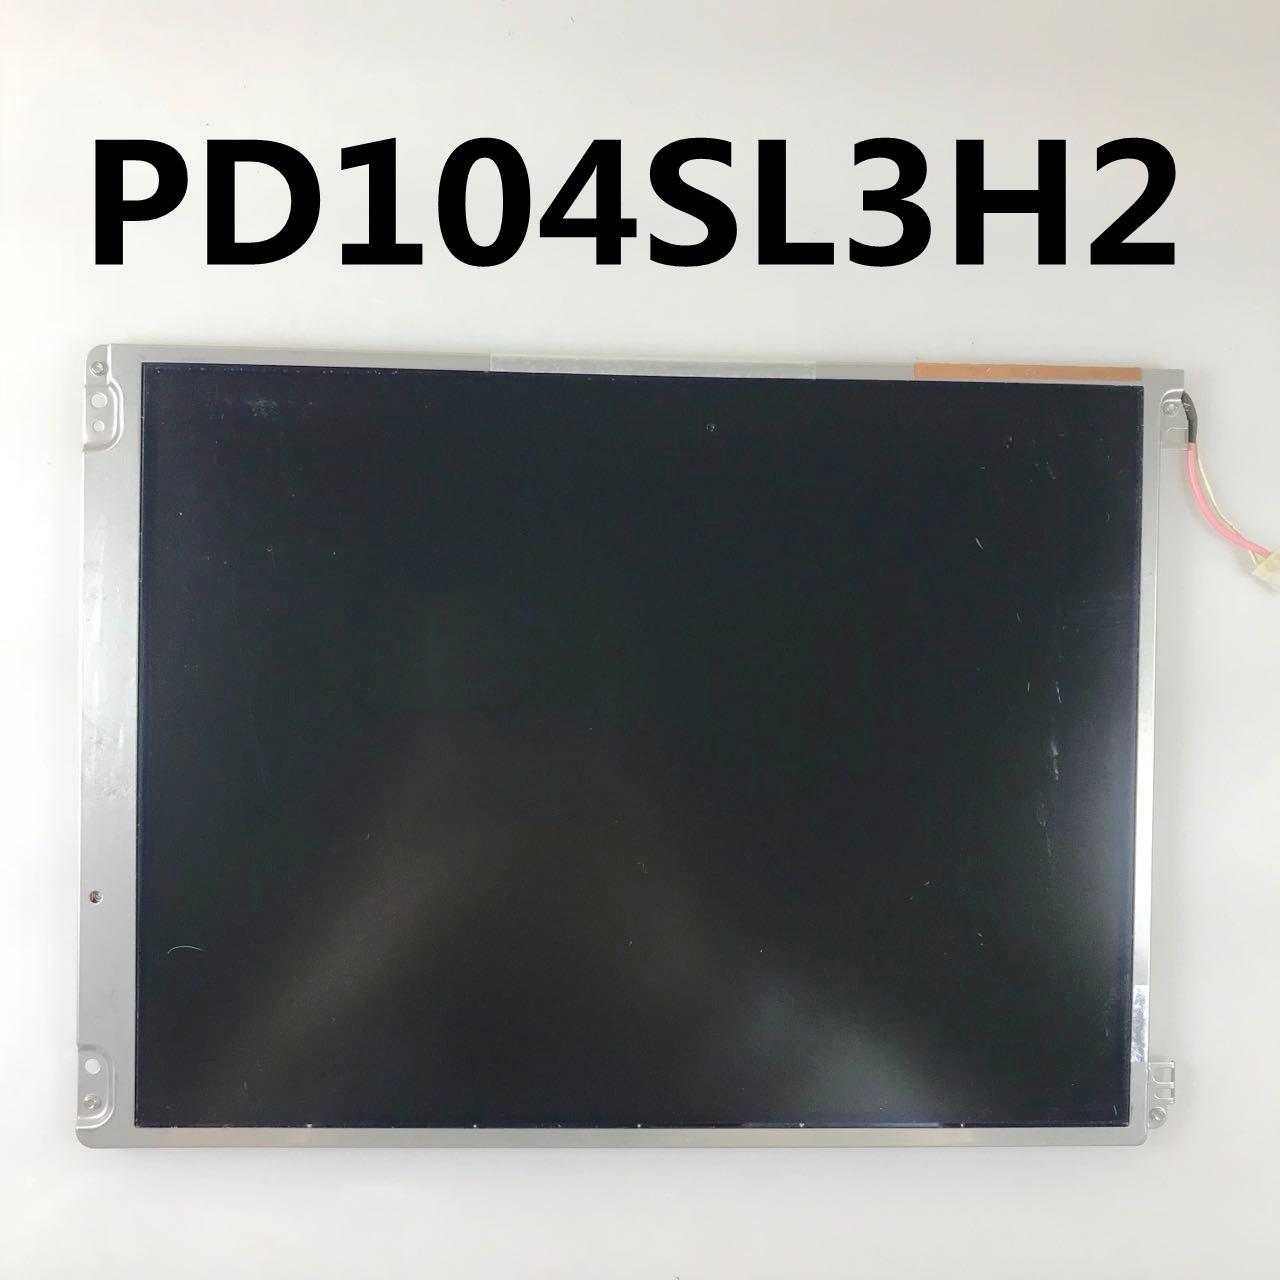 原装现货出售PD104SL3H2拍前请联系客服确认型号和参数